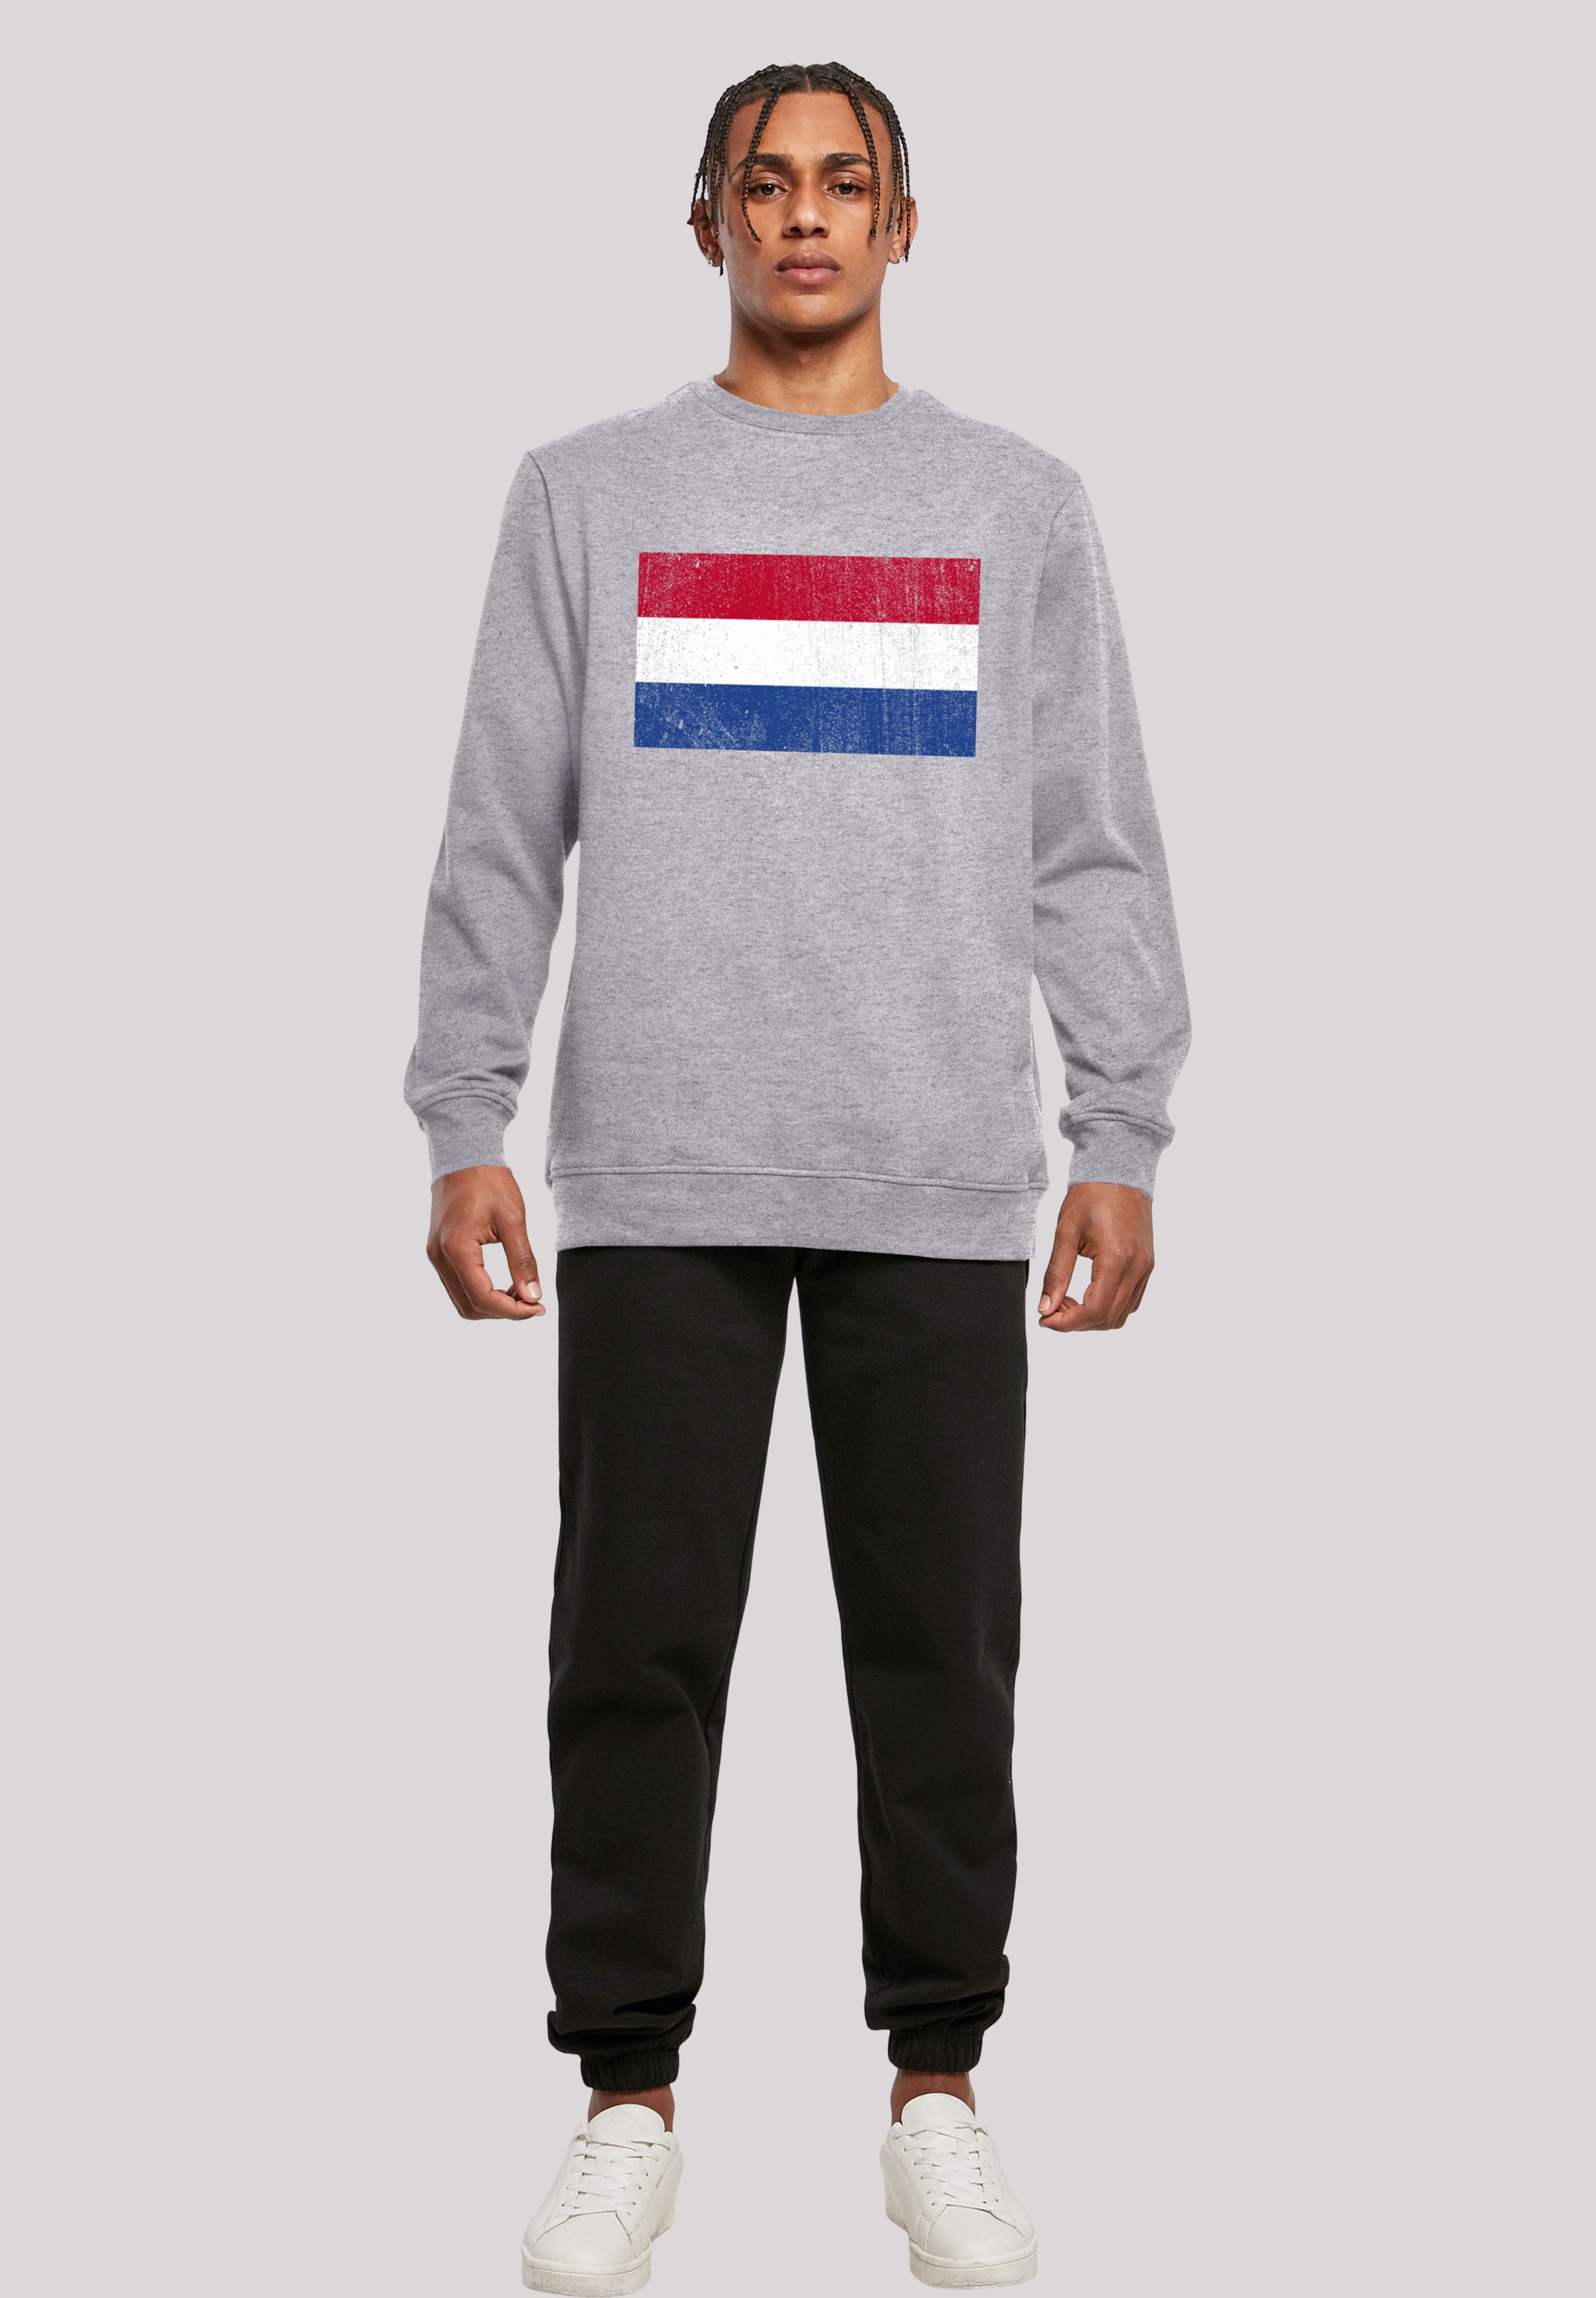 distressed«, Flagge BAUR Print Holland »Netherlands für Kapuzenpullover F4NT4STIC NIederlande ▷ |